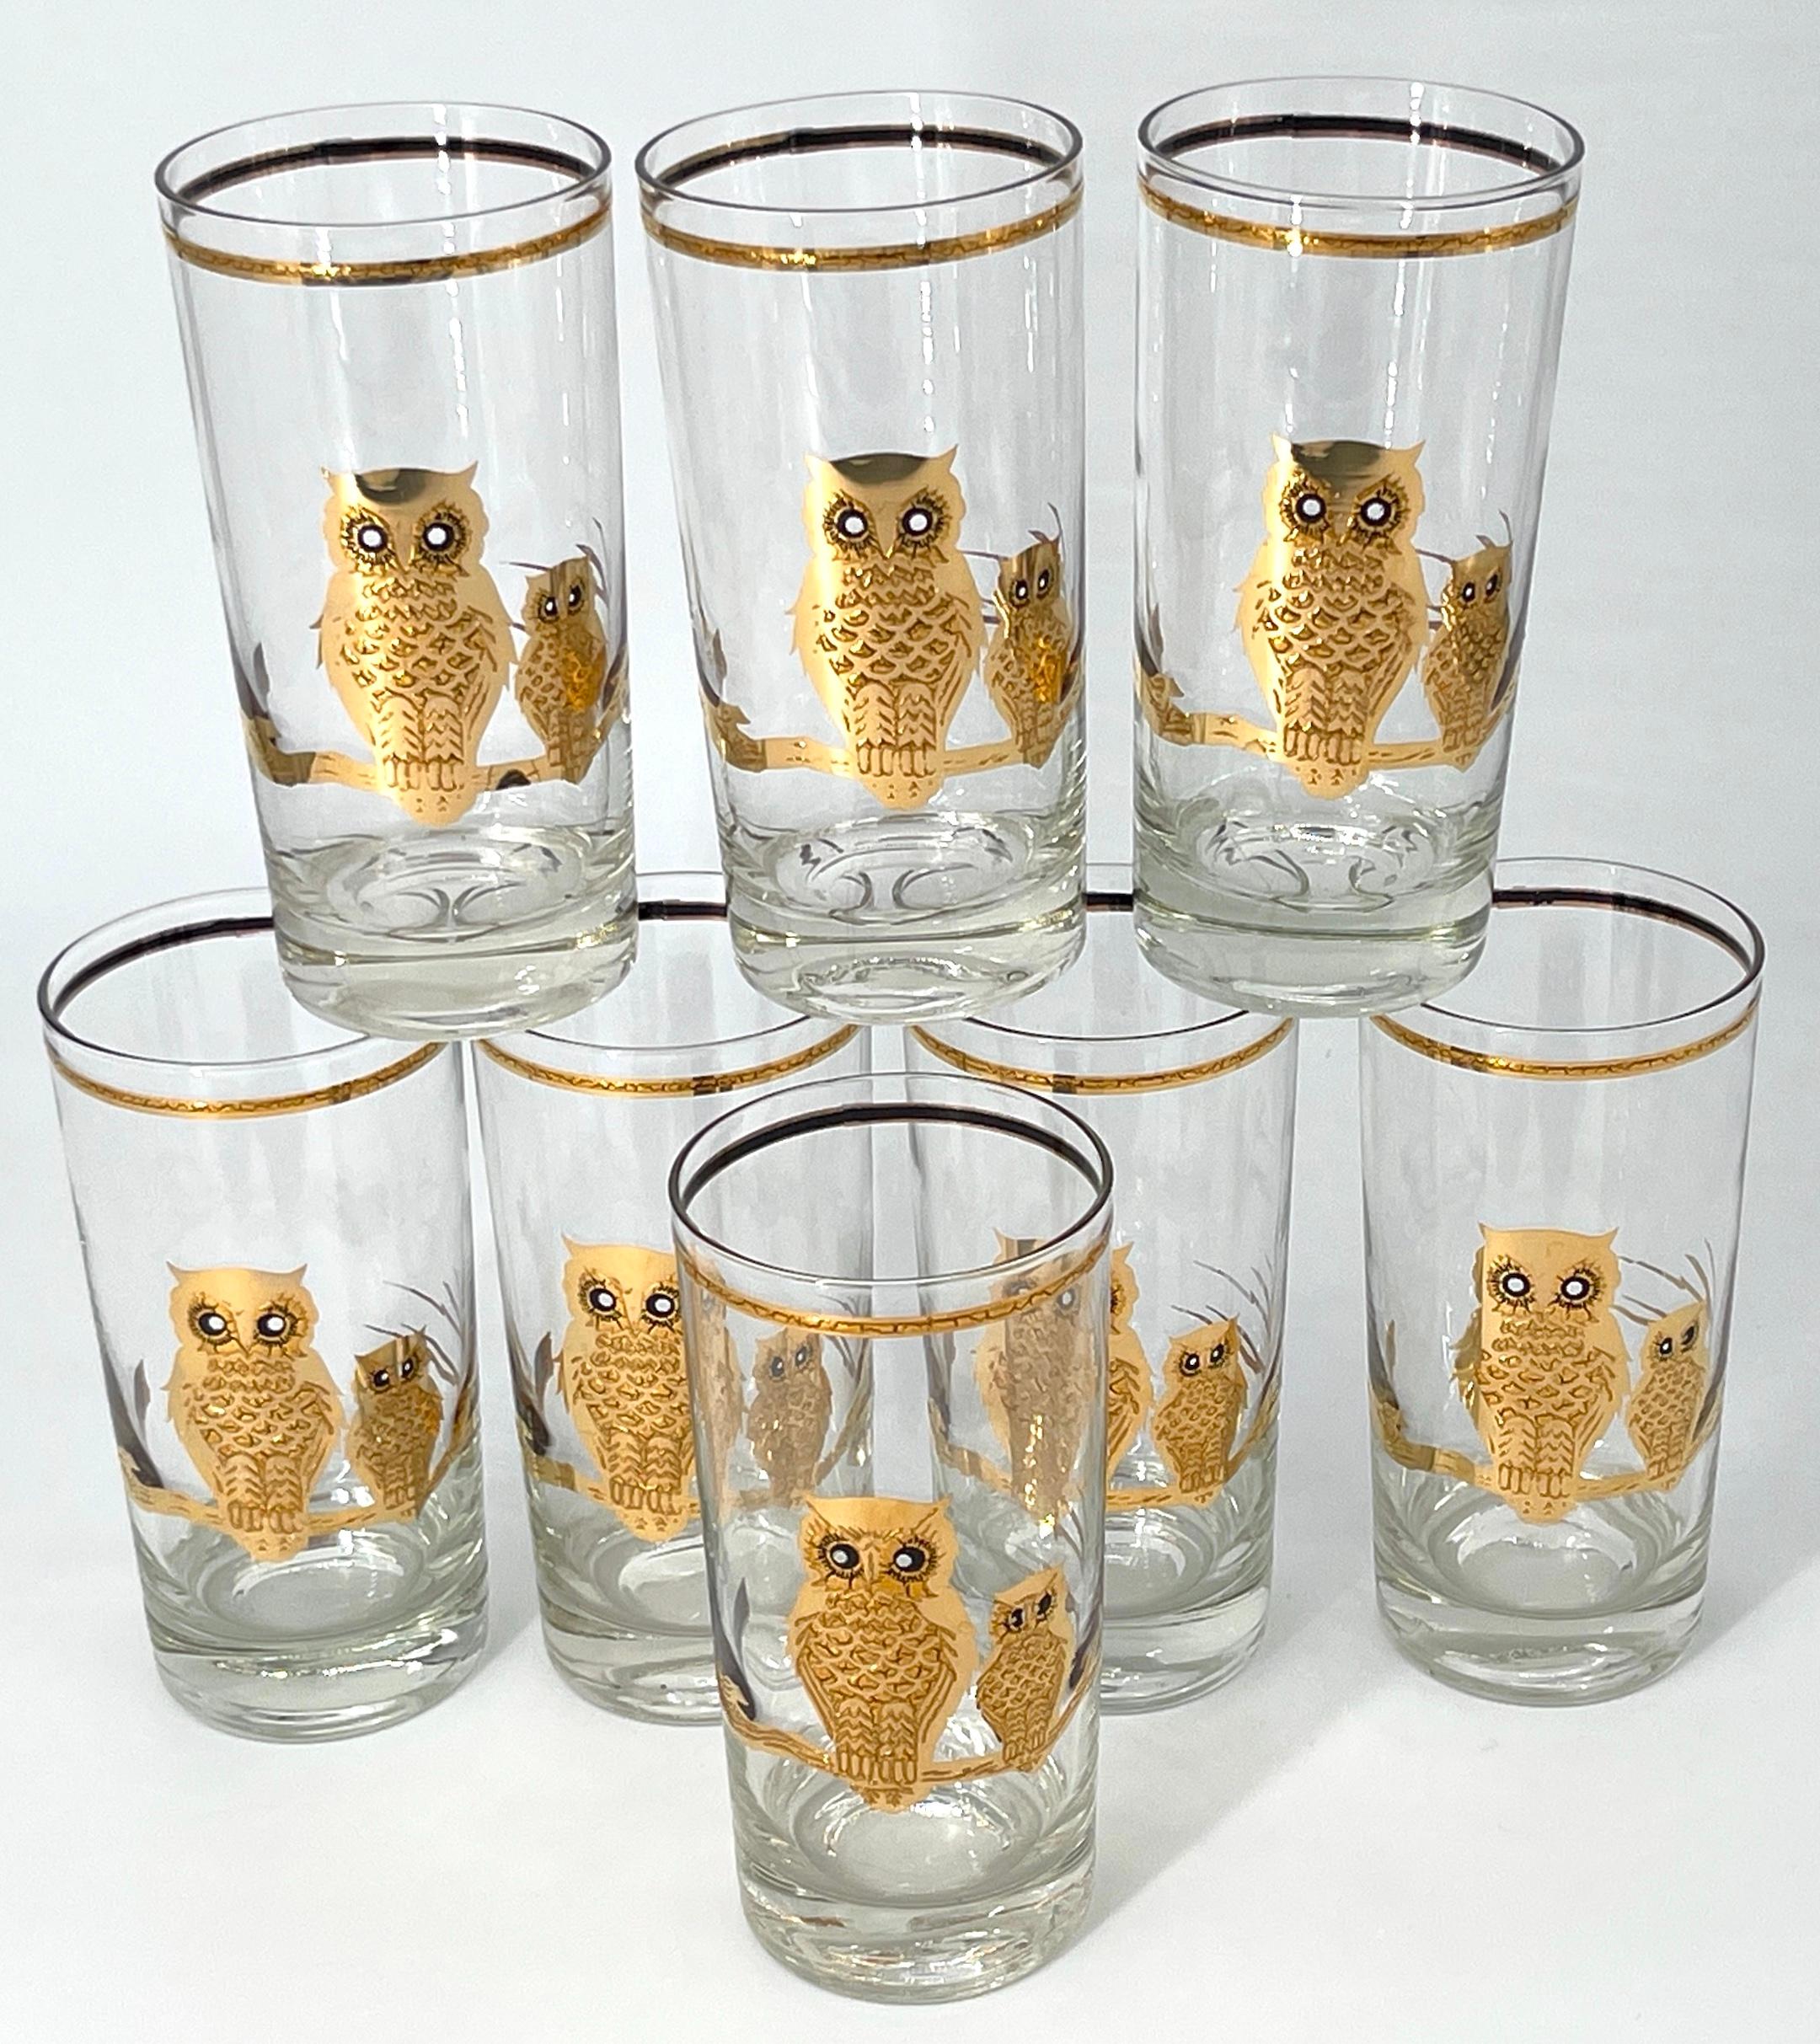 8 Culver, signé Vintage Mid-Century Barware, 22K Gilded Gold Owls, Highball Tumbler Drinking Glasses, 
USA, Circa 1950s

Un ensemble de 8 verres Vintage By highball/tall, de véritables joyaux de l'ère du milieu du siècle. Fabriquées aux États-Unis